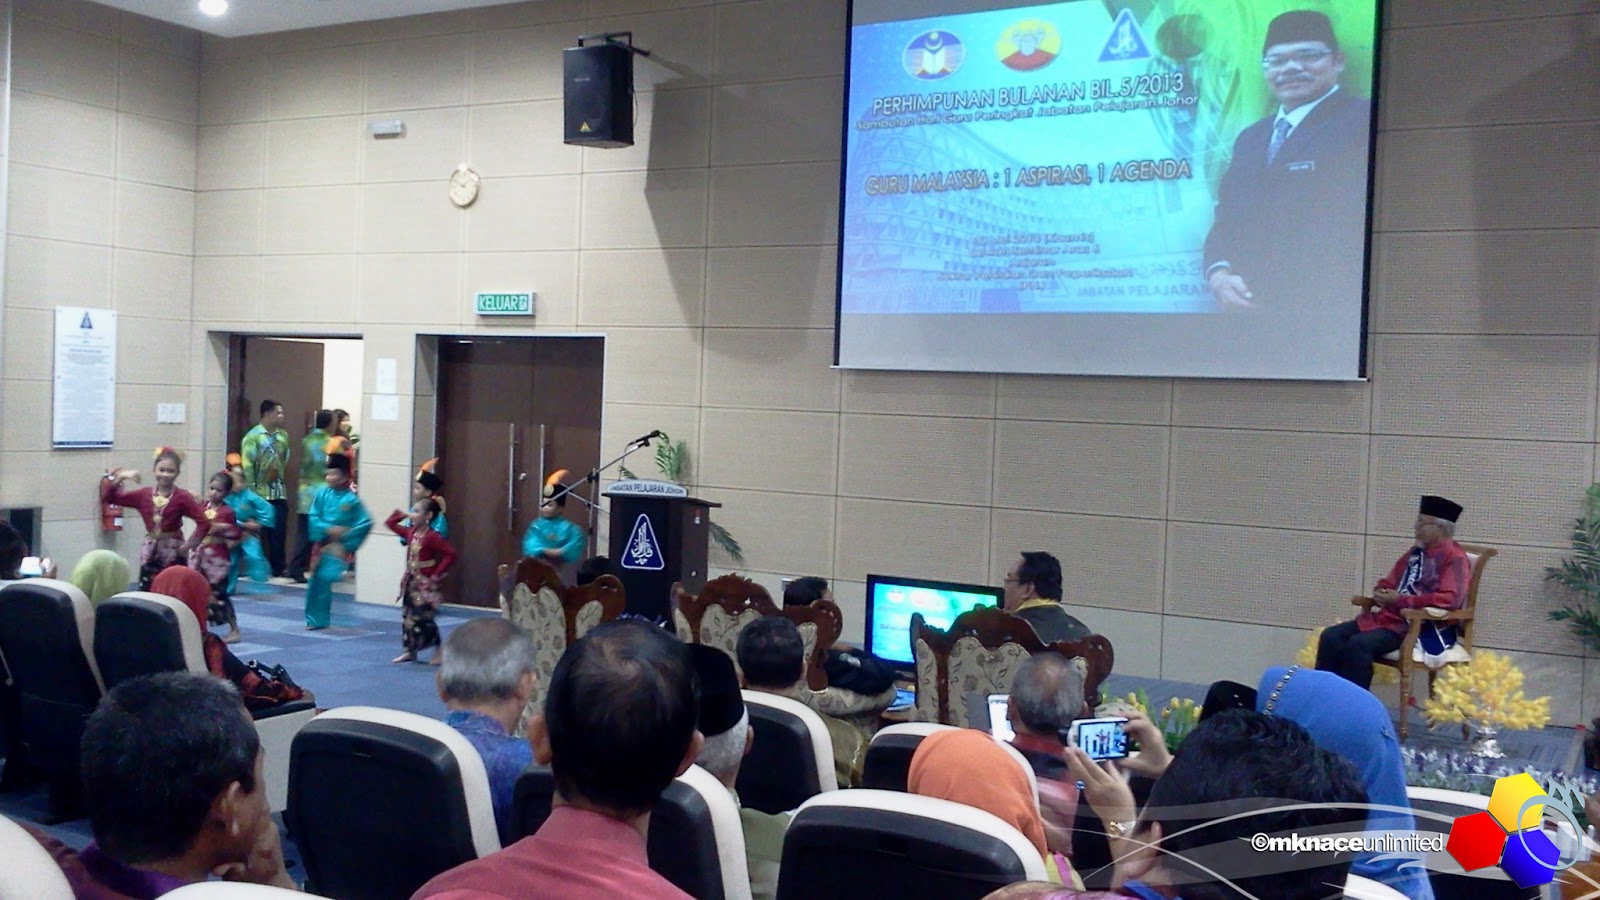 Perhimpunan Bulanan Bil.5/2013 Jabatan Pelajaran Johor 